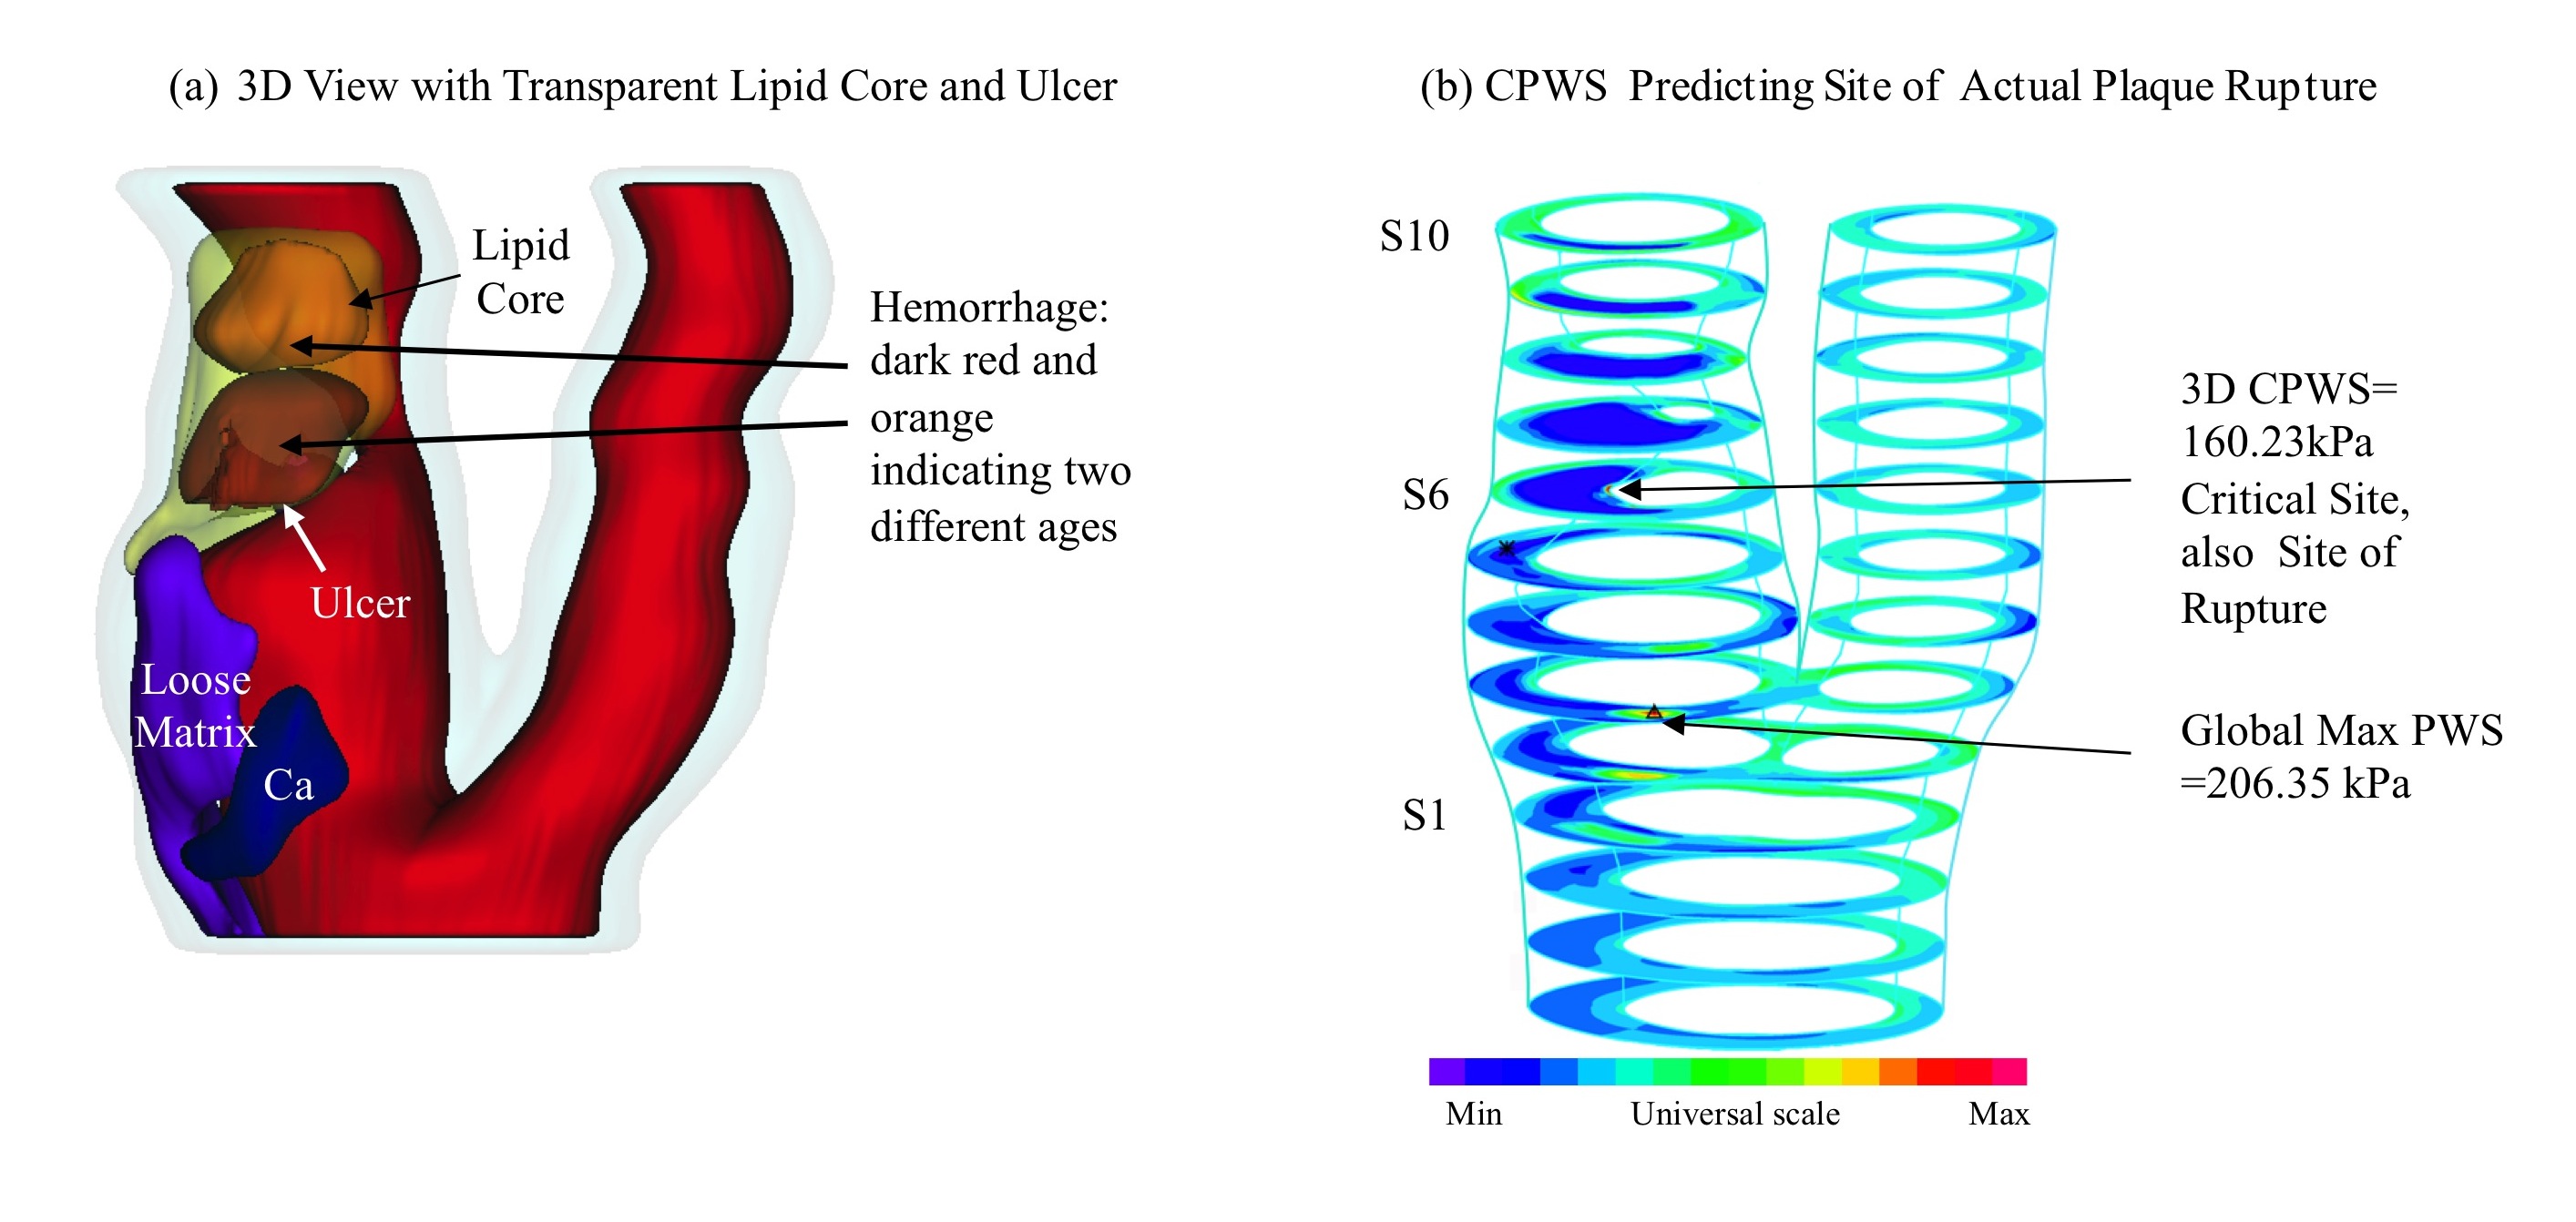 Esta vista 3D de una placa carótida humana muestra componentes de placa y la presencia de ulceración (a). Trazos de banda de la tensión en la pared de placa (Tensión-P1) muestran que la tensión crítica en la pared de placa en 3D (CPWS por sus siglas en inglés) predijo el sitio real de la ruptura (b)." title="Esta vista 3D de una placa carótida humana muestra componentes de placa y la presencia de ulceración (a). Trazos de banda de la tensión en la pared de placa (Tensión-P1) muestran que la tensión crítica en la pared de placa en 3D (CPWS por sus siglas en inglés) predijo el sitio real de la ruptura (b)